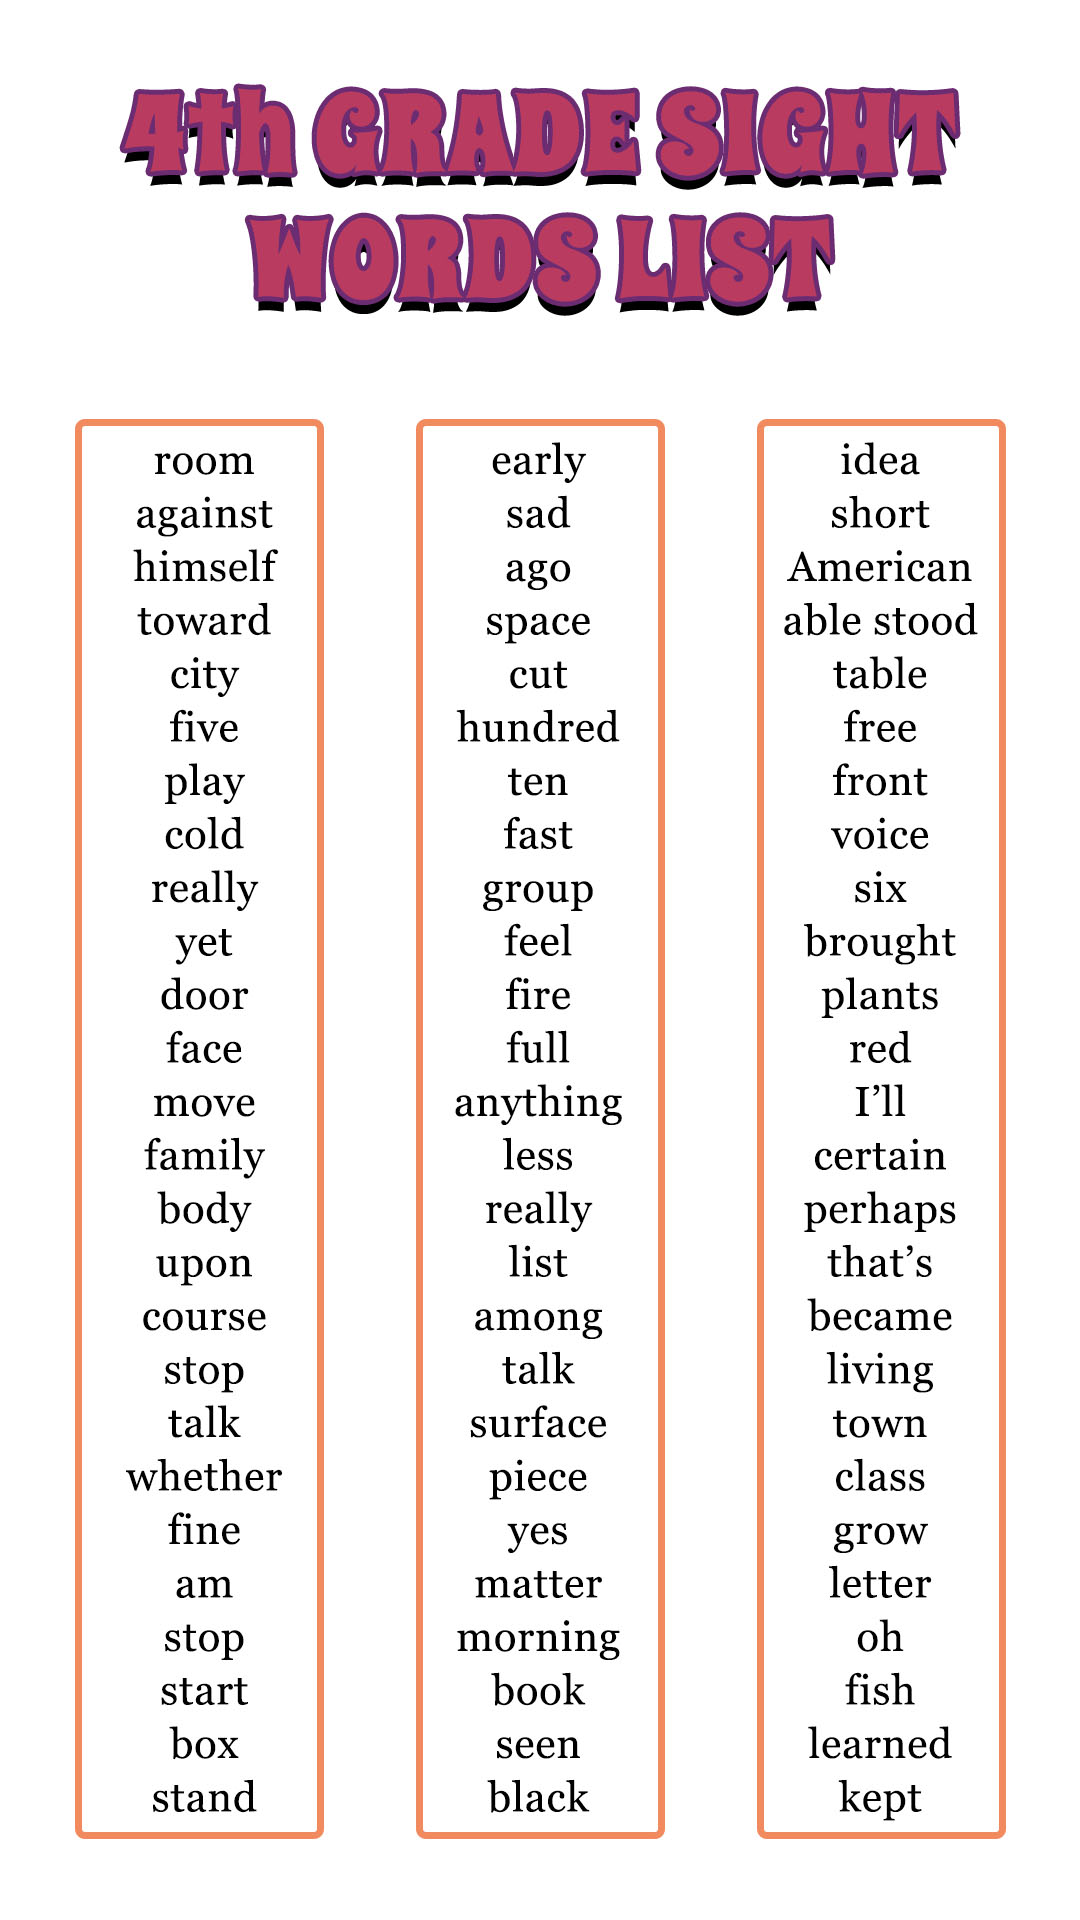 4th Grade Sight Words List